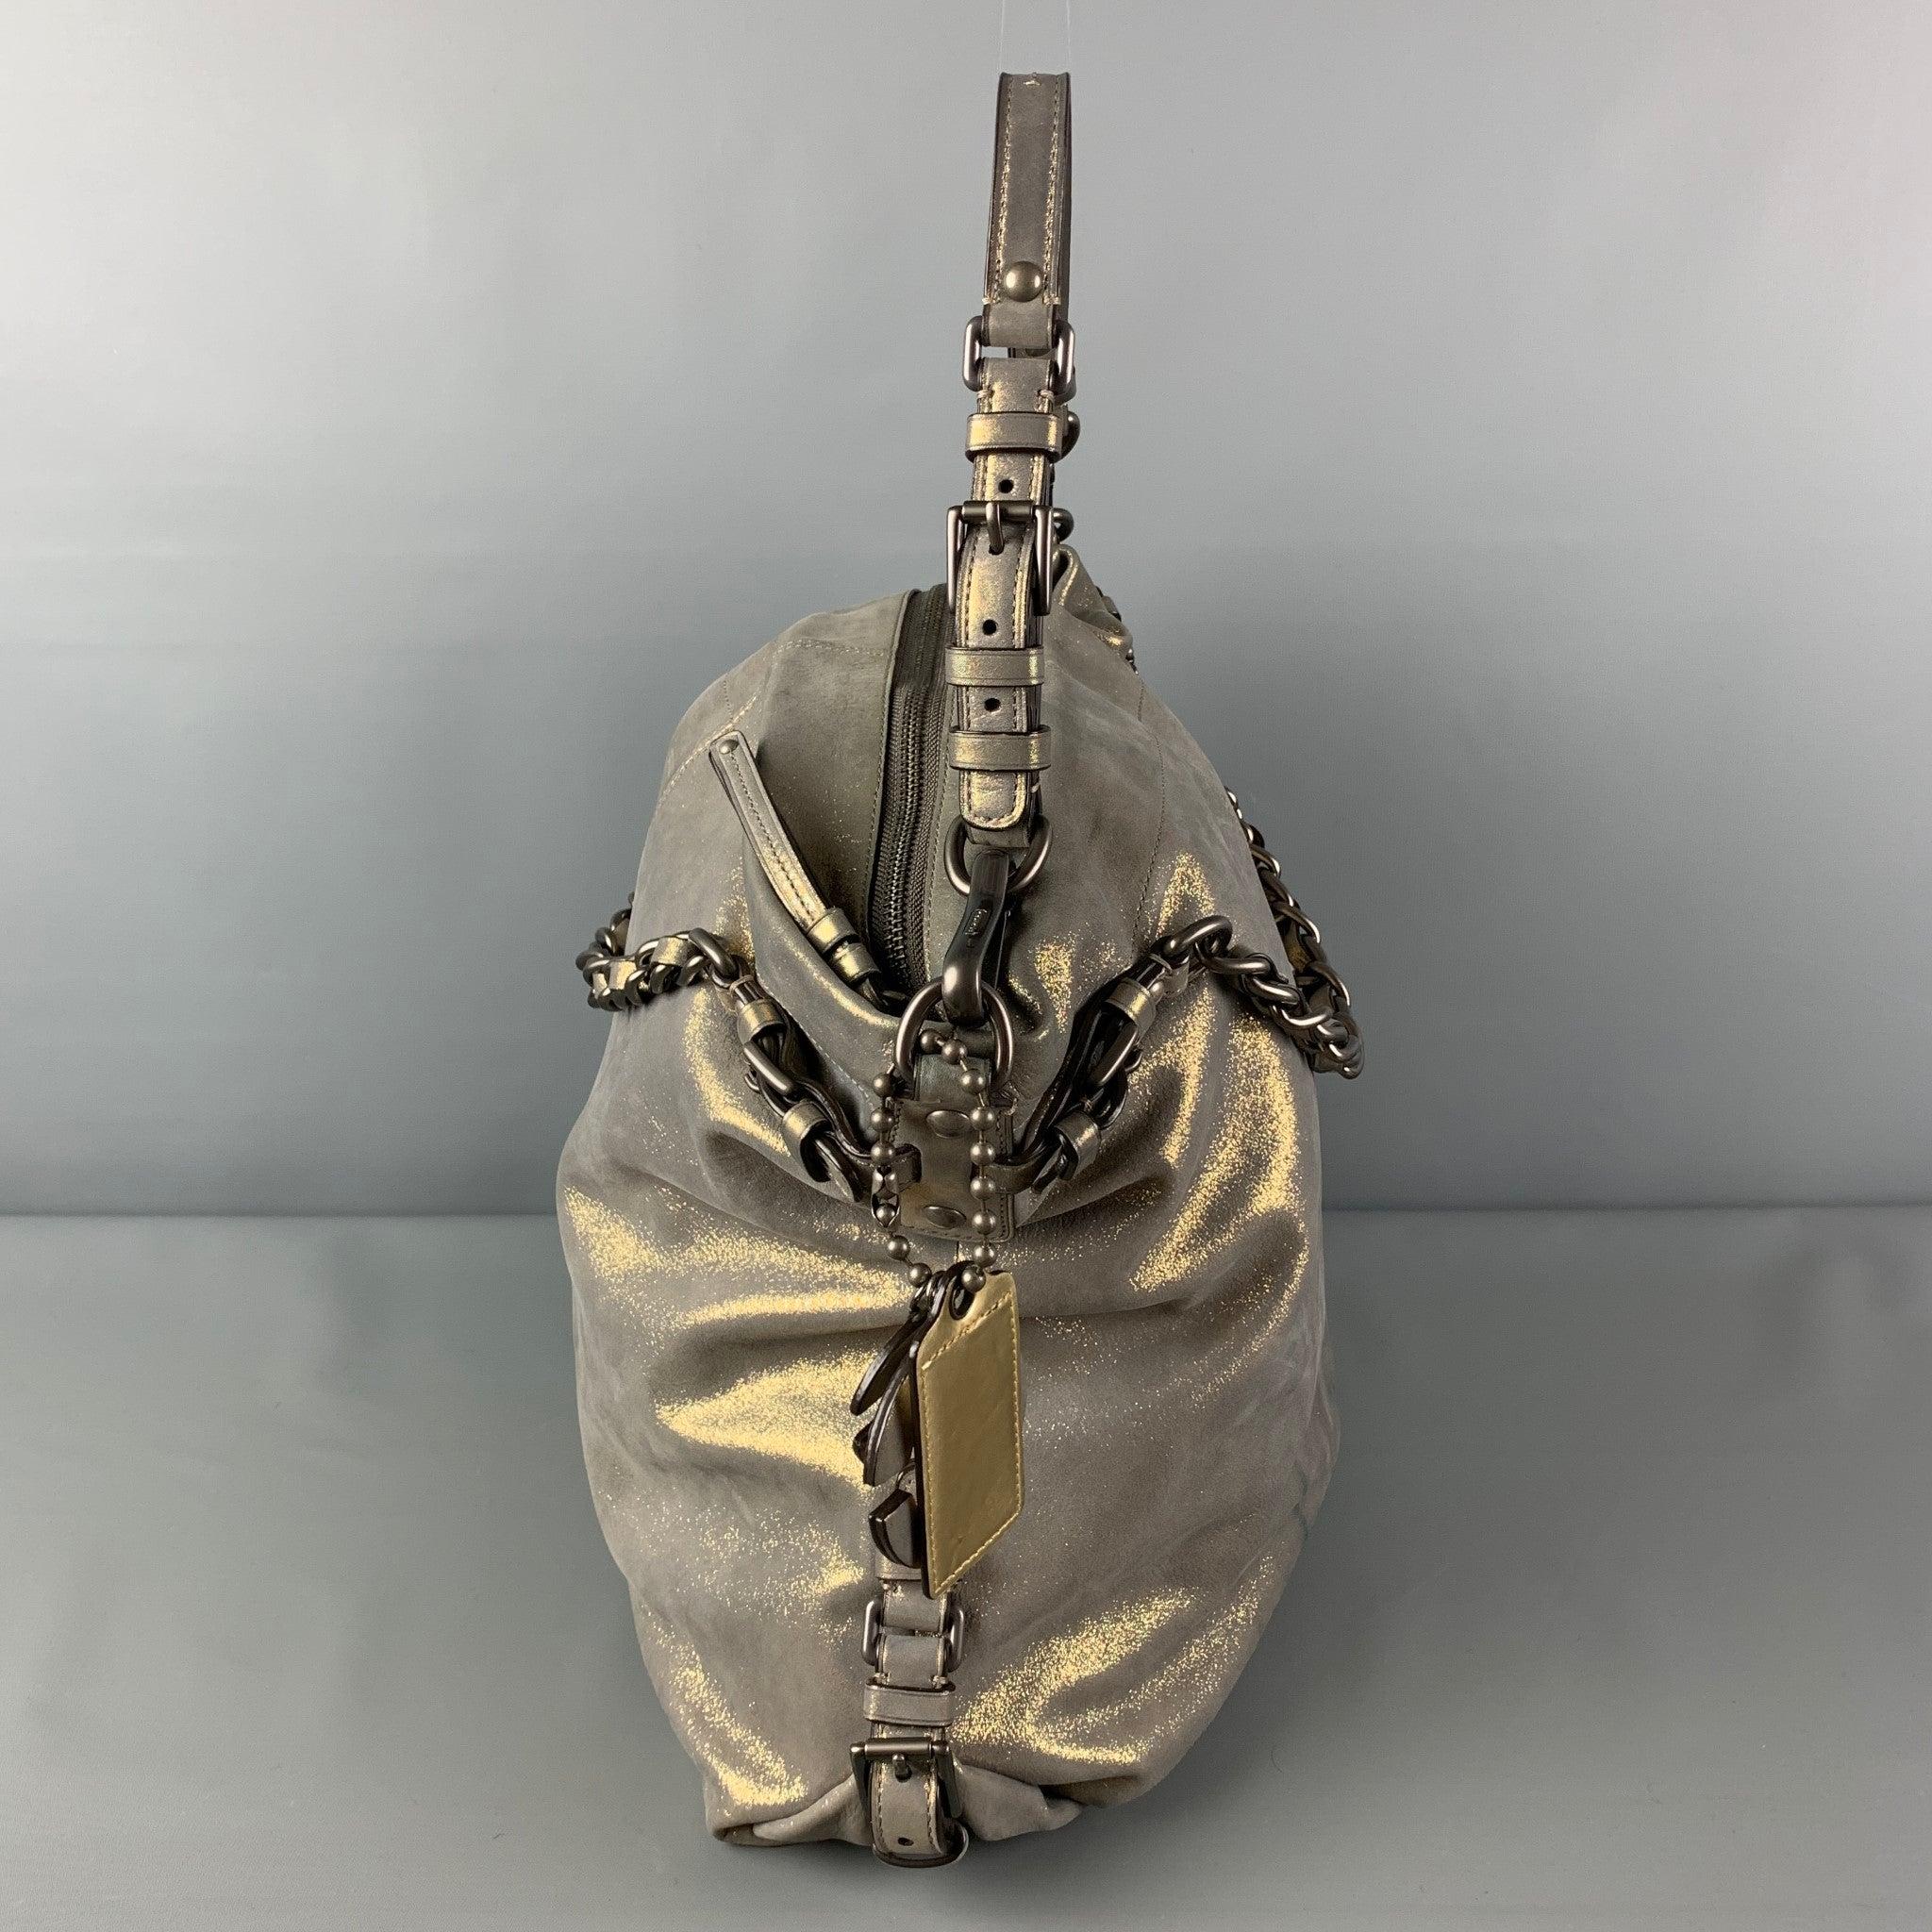 Le sac COACH est présenté dans un cuir gris métallisé avec des accessoires de couleur argentée, des poignées supérieures à maillons, une bandoulière réglable, des breloques avec logo, des fentes intérieures et une fermeture à glissière sur le